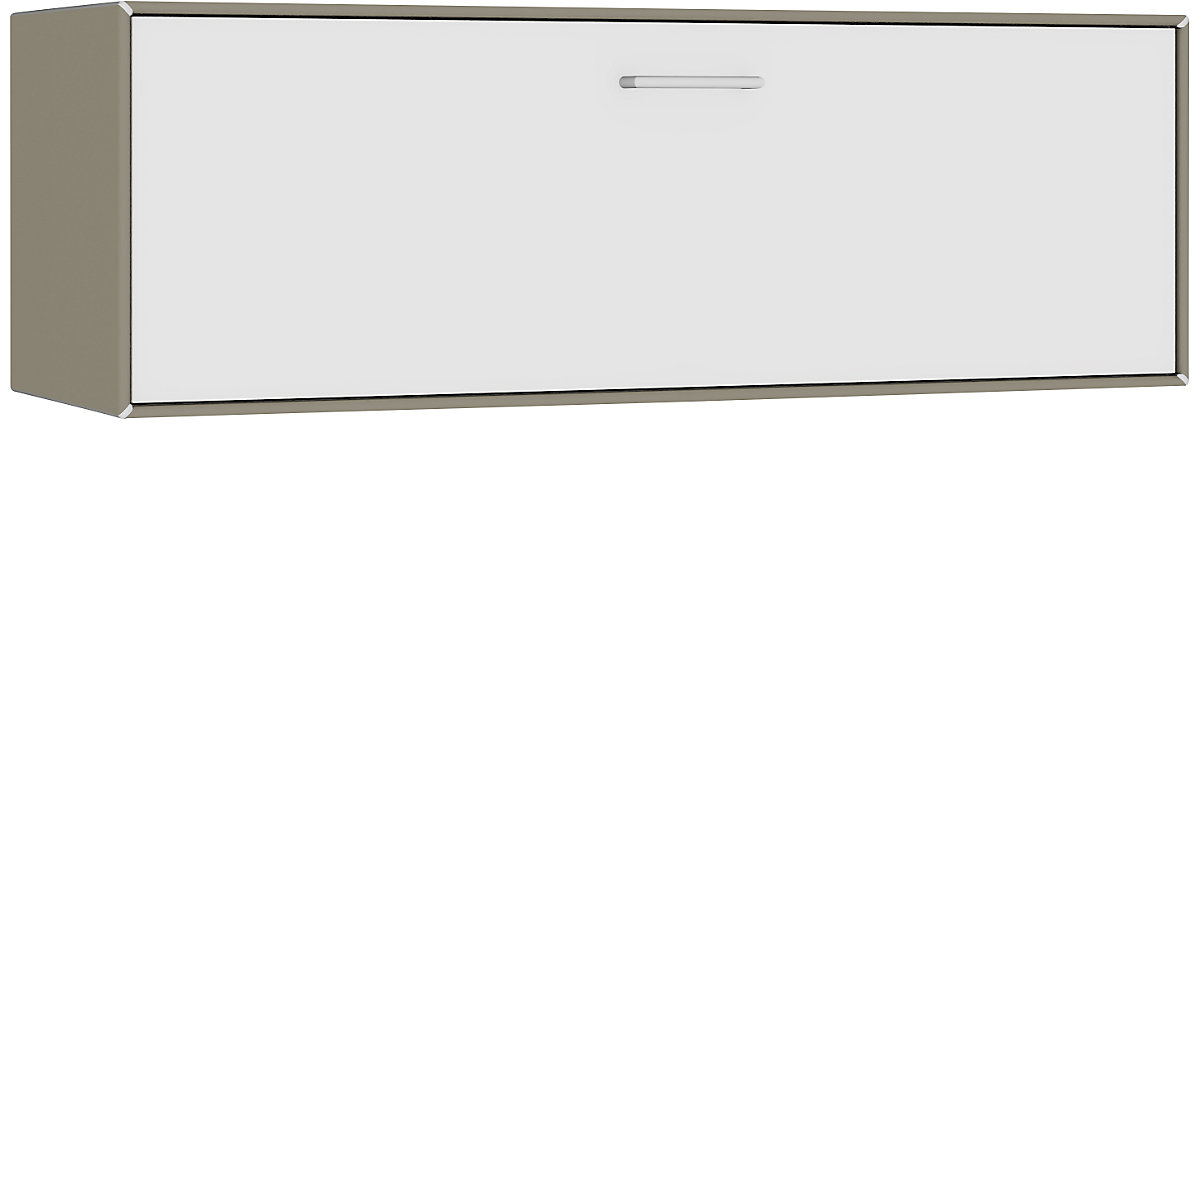 Compartimento individual, para colgar – mauser, 1 cajón, anchura 1155 mm, gris beige / blanco puro-2